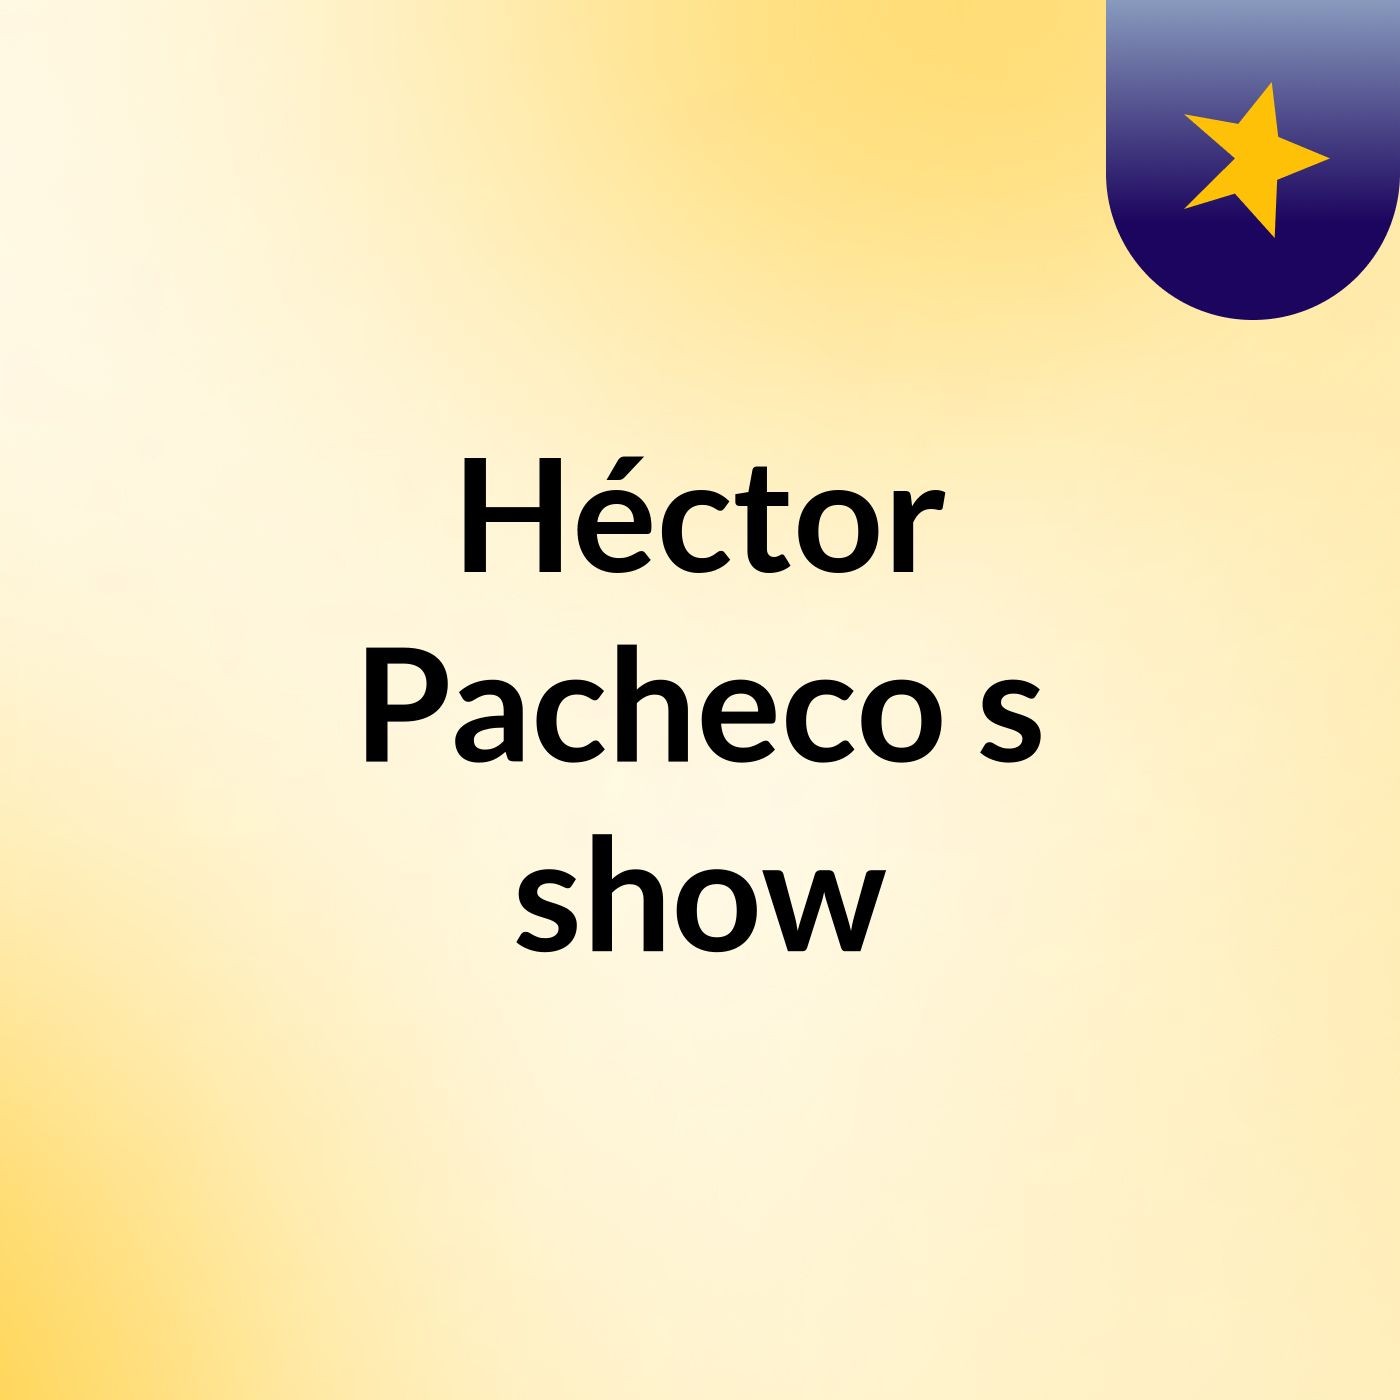 Héctor Pacheco's show